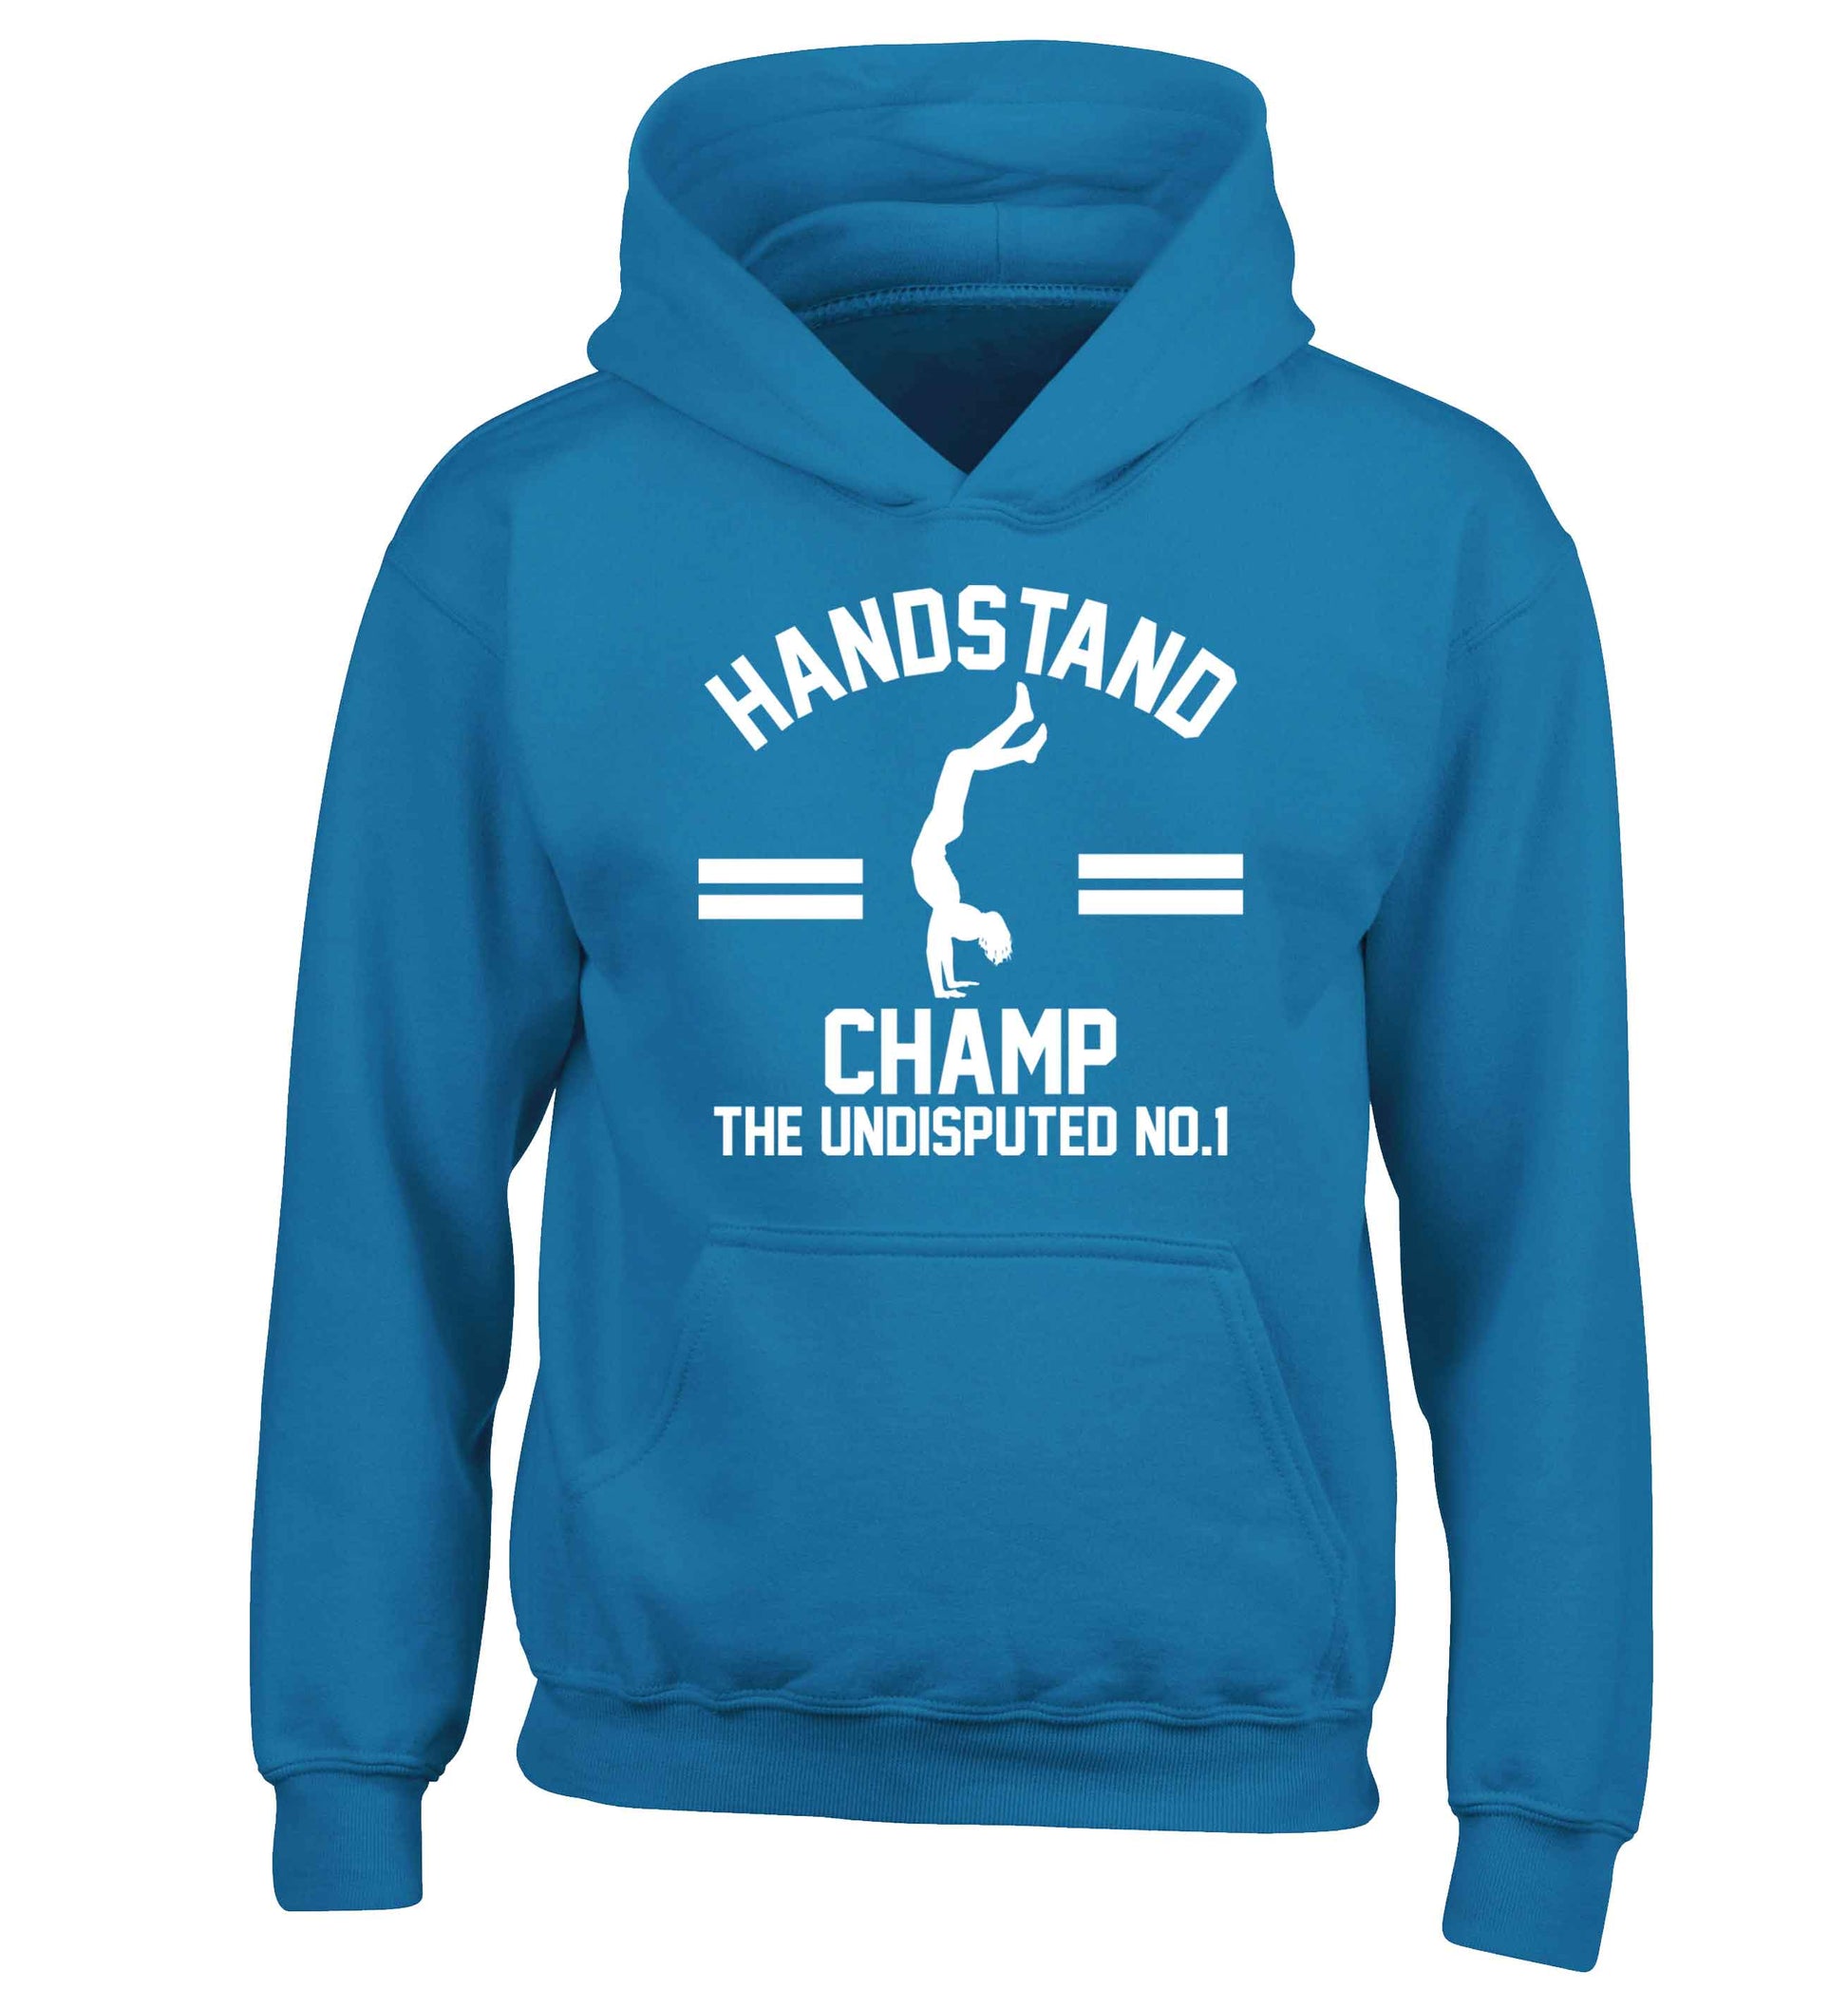 Undisputed handstand championship no.1  children's blue hoodie 12-13 Years